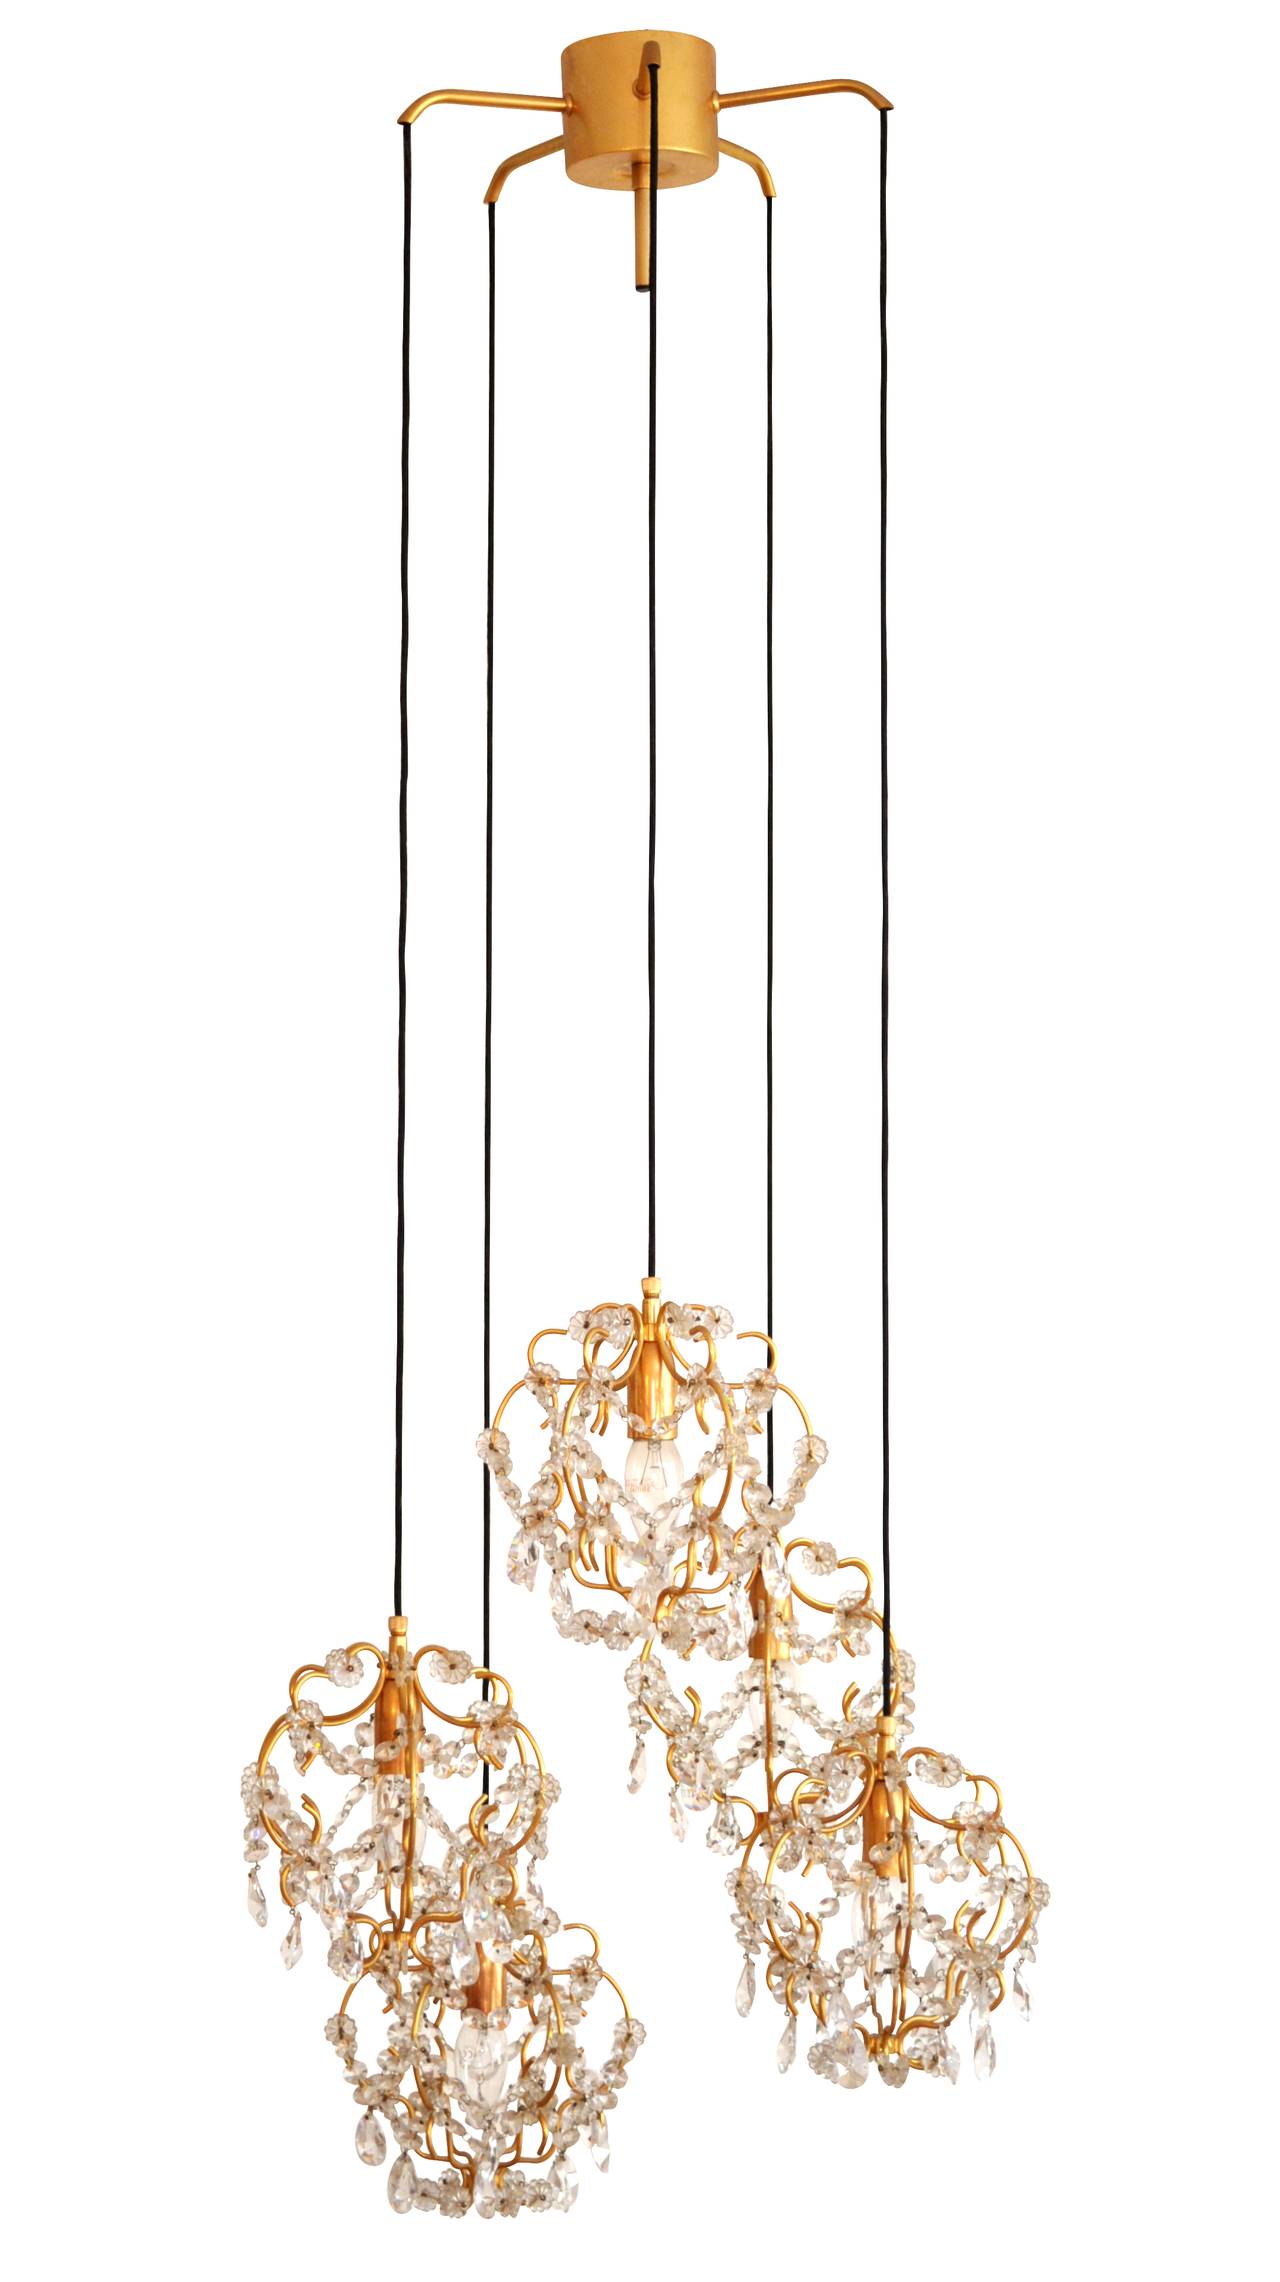 Eine wunderschöne Hängelampe aus vergoldetem Messing mit fünf Lichtern im Stil von Lobmeyr, Palwa oder Sciolari, hergestellt in der Mitte des Jahrhunderts, um 1960.
Die Lampenschirme sind aus vergoldetem Messing gefertigt und mit geschliffenem